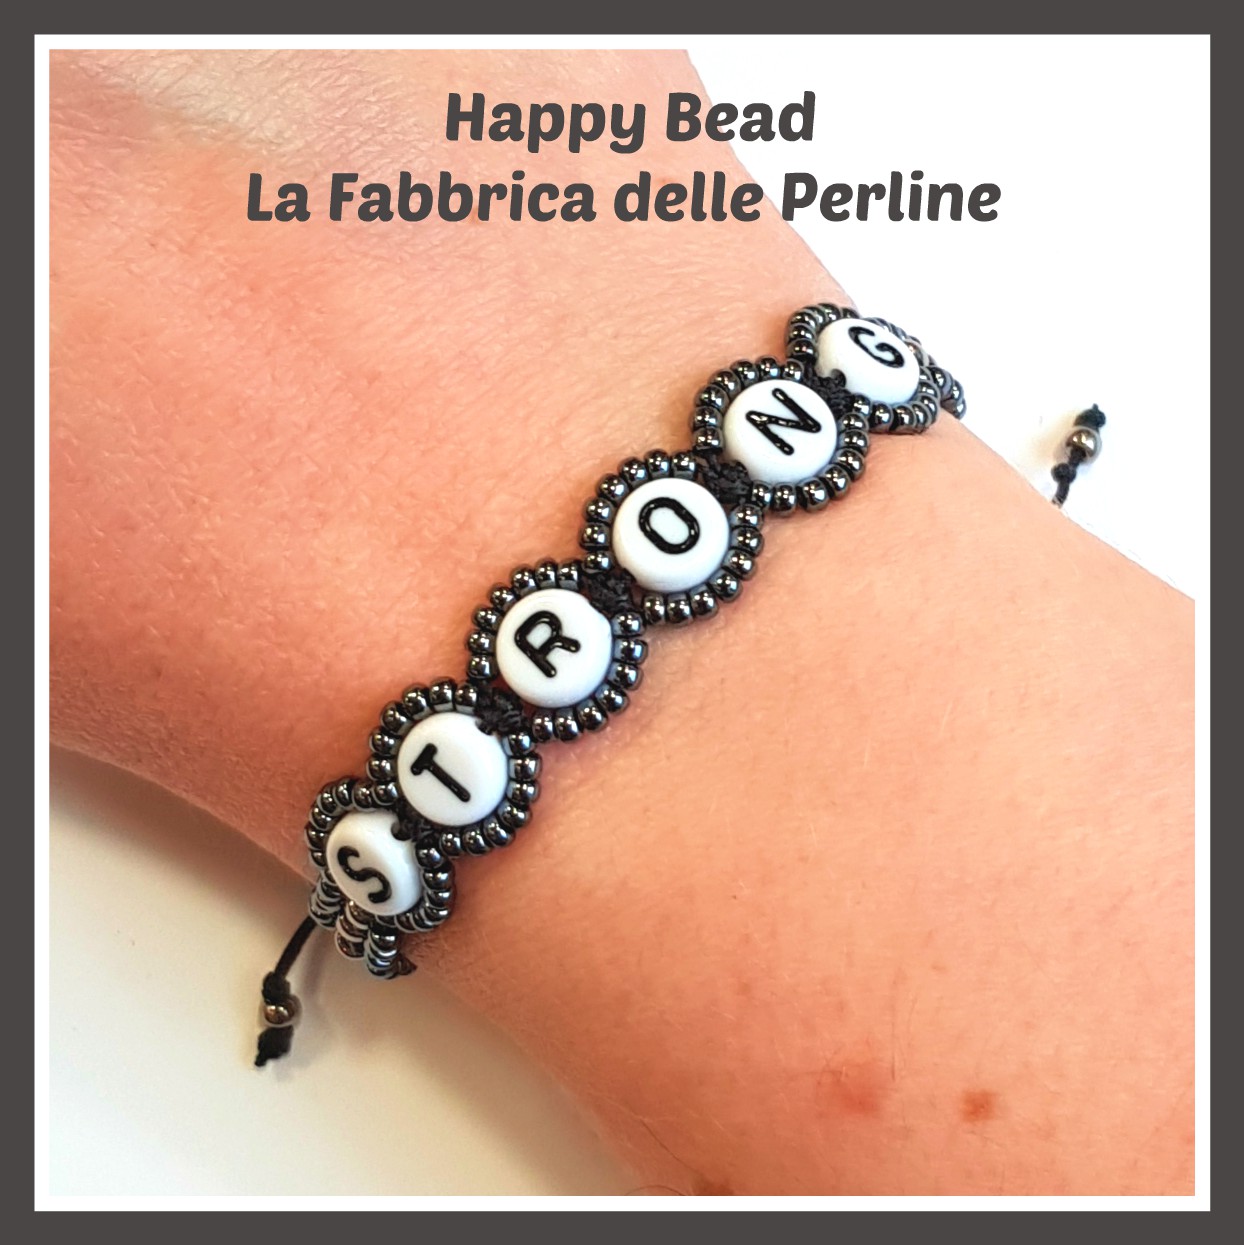 Macramé Bracciale Nome - Benvenuti su Happy Bead - La Fabbrica delle Perline